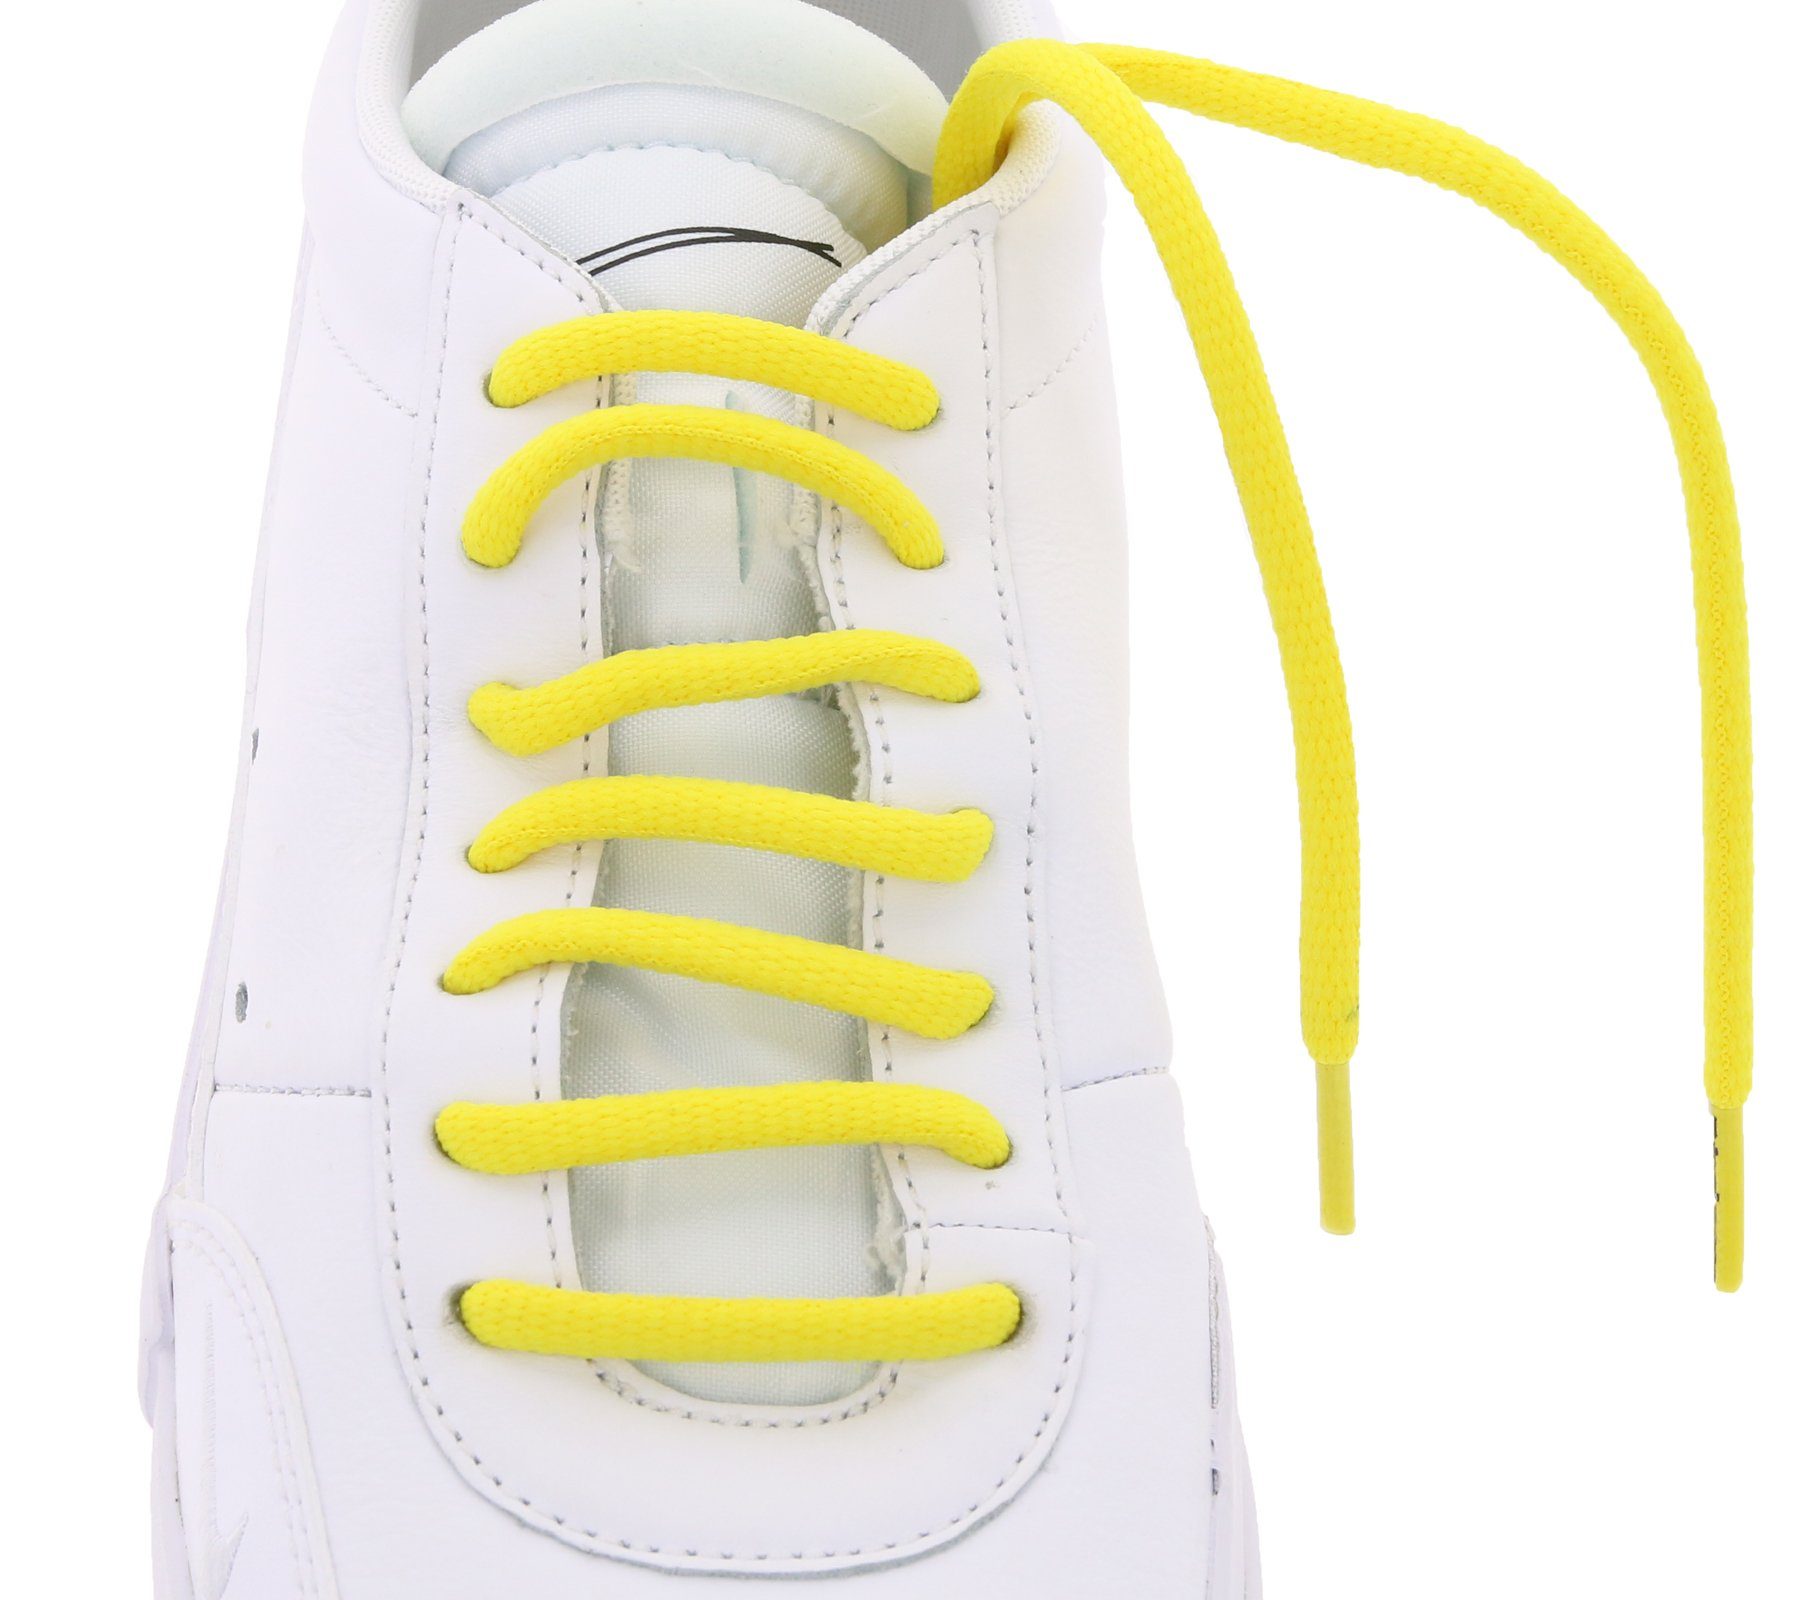 Schuh Gelb Schnürbänder Schnürsenkel Tubelaces Schnürsenkel Schuhband TubeLaces farbenfrohe